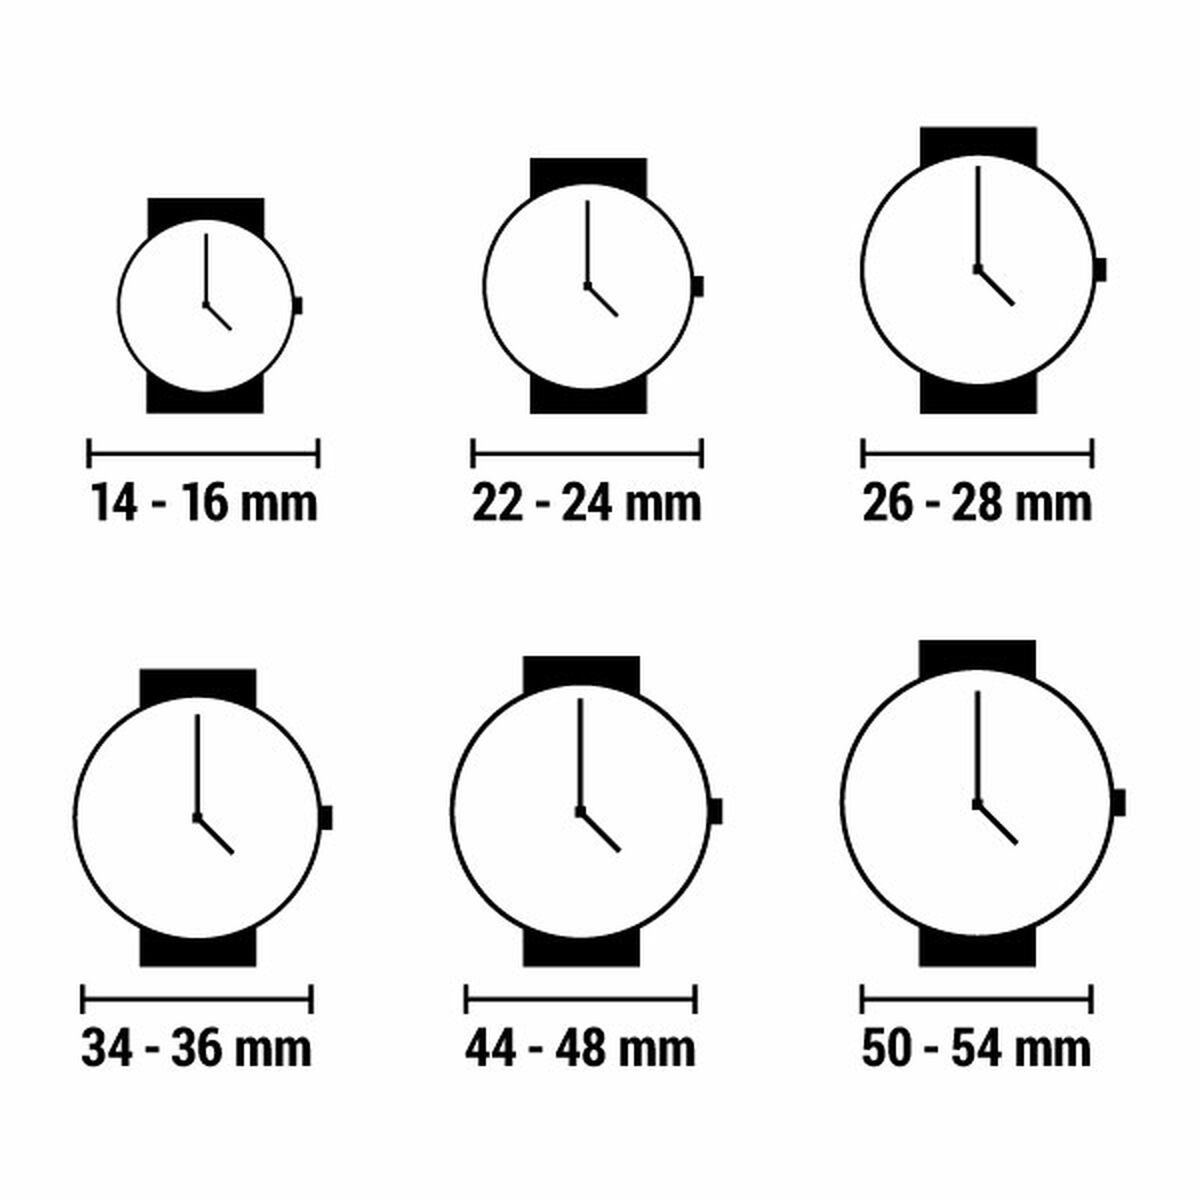 Horloge Dames Guess GW0308L2 (Ø 36 mm)